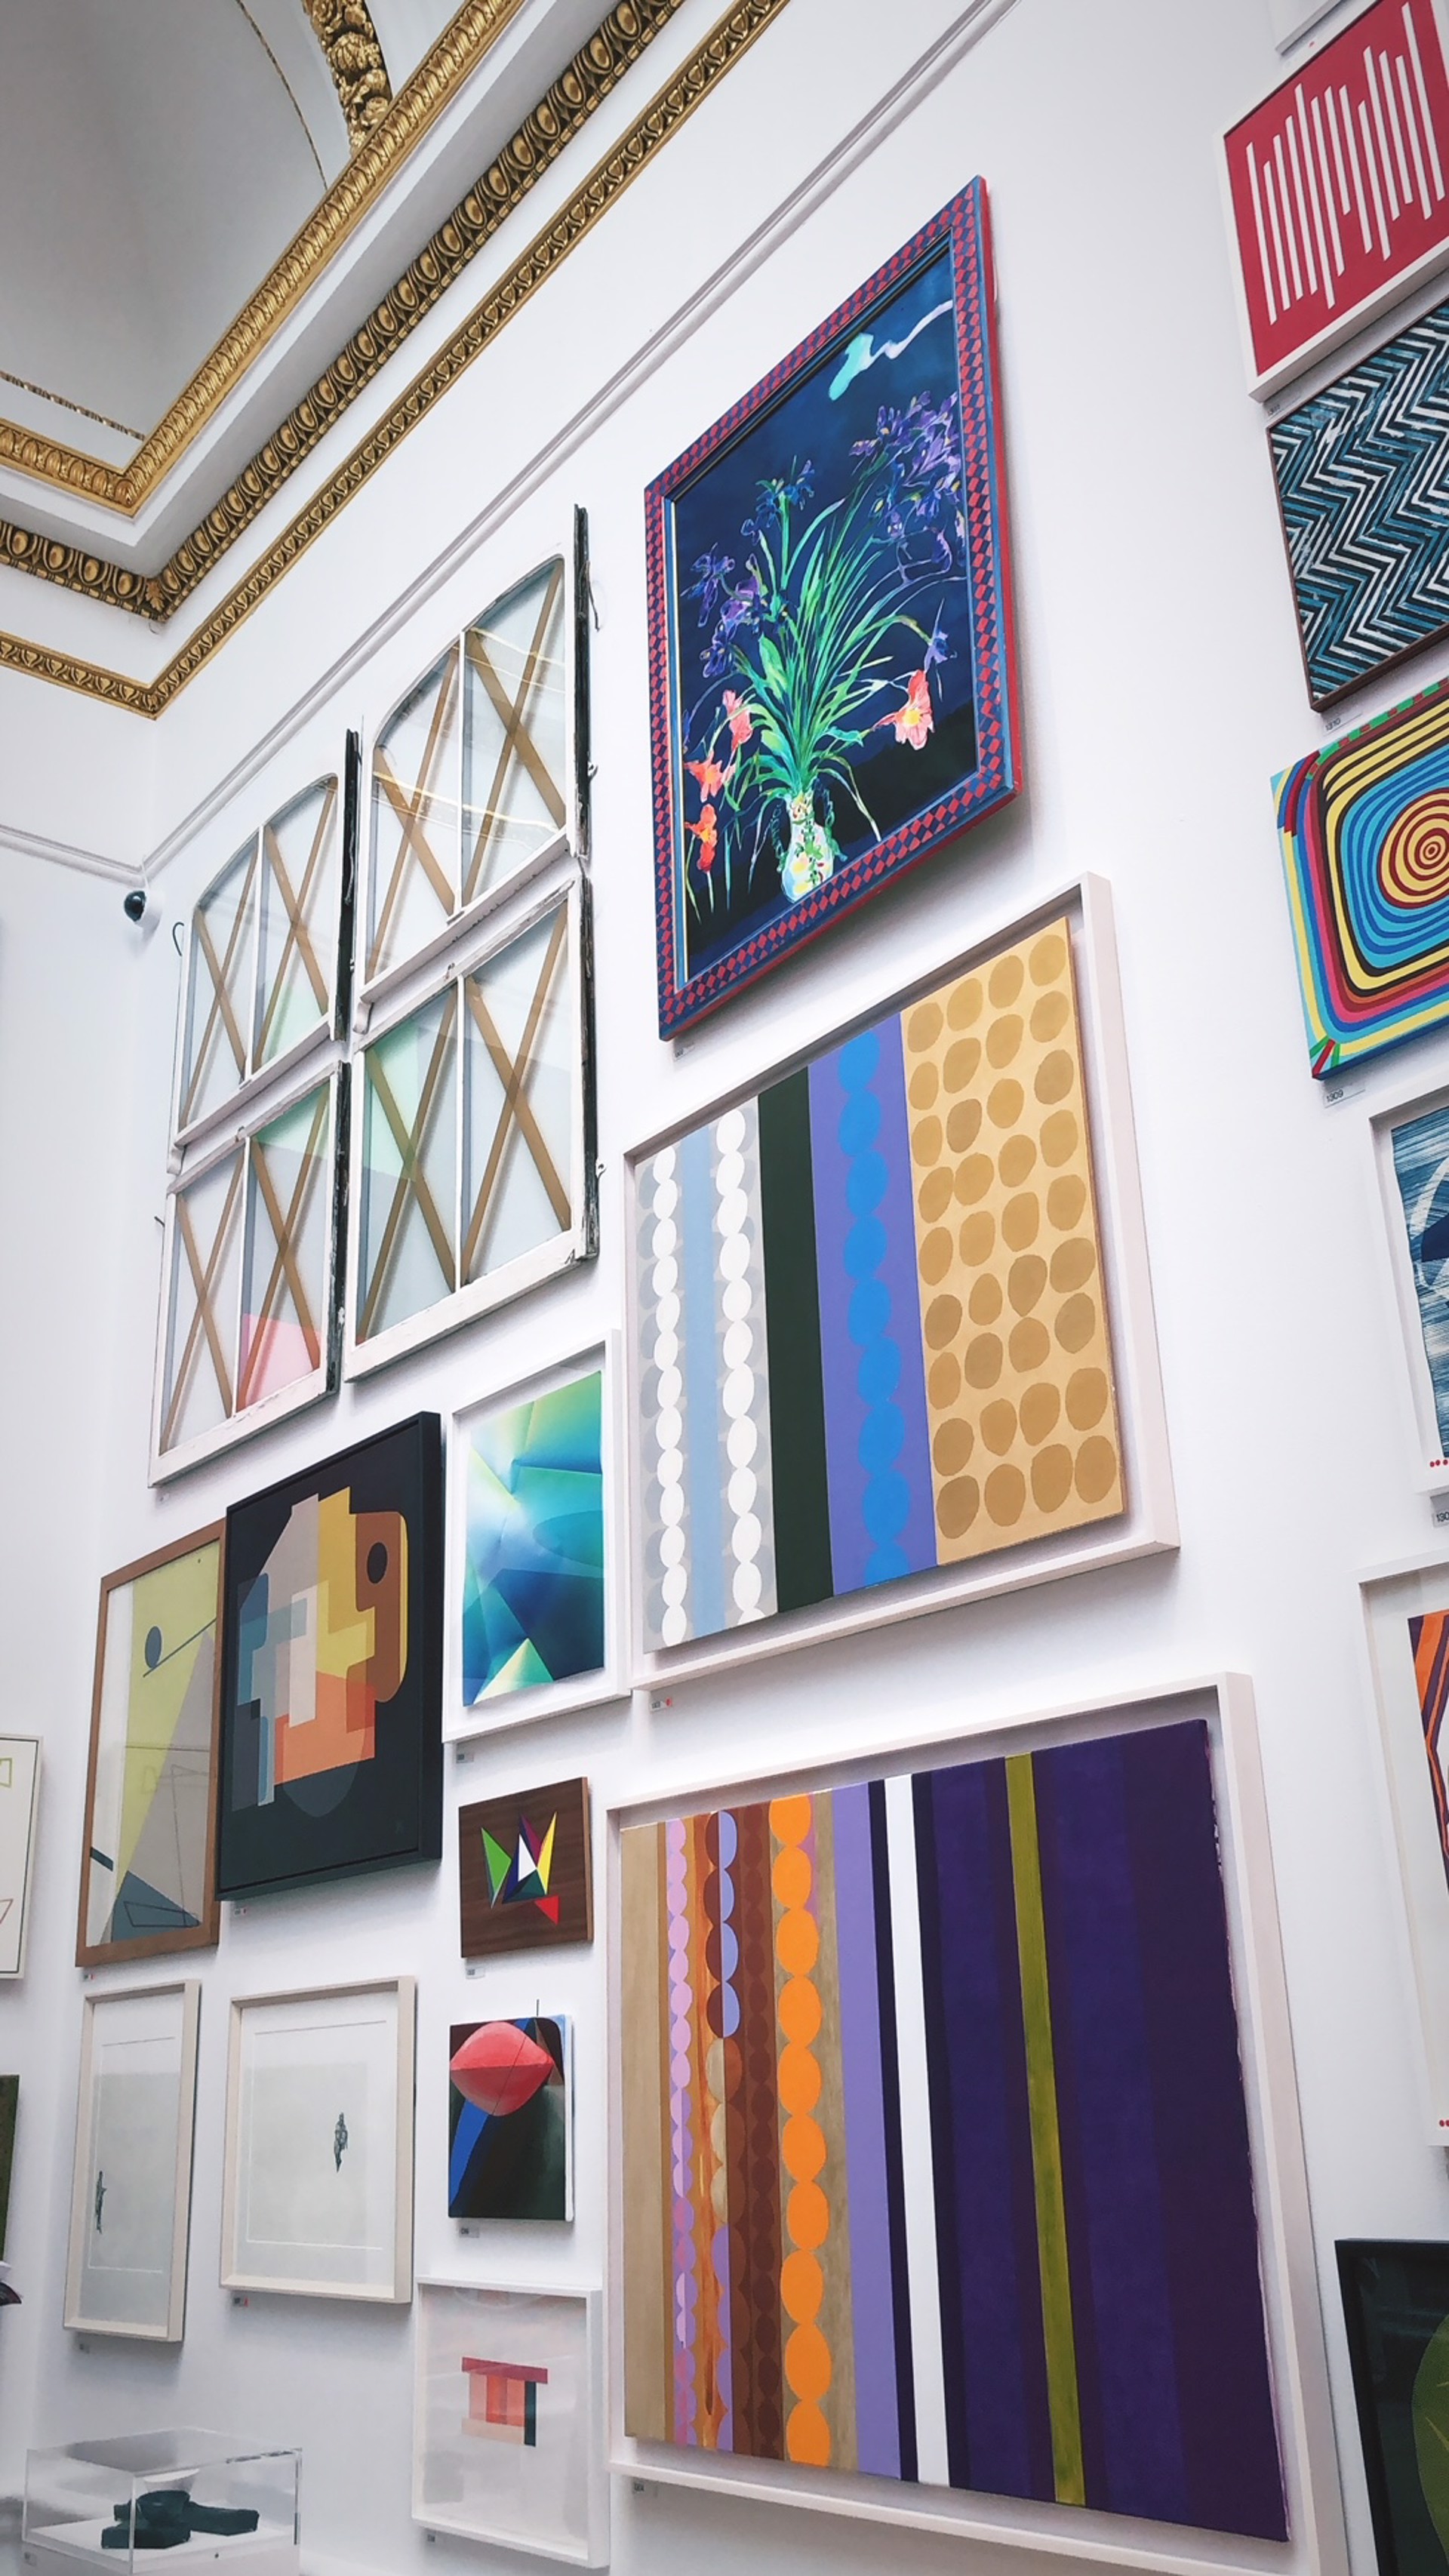 Gallery Wall Series 23 by Julie Andrews